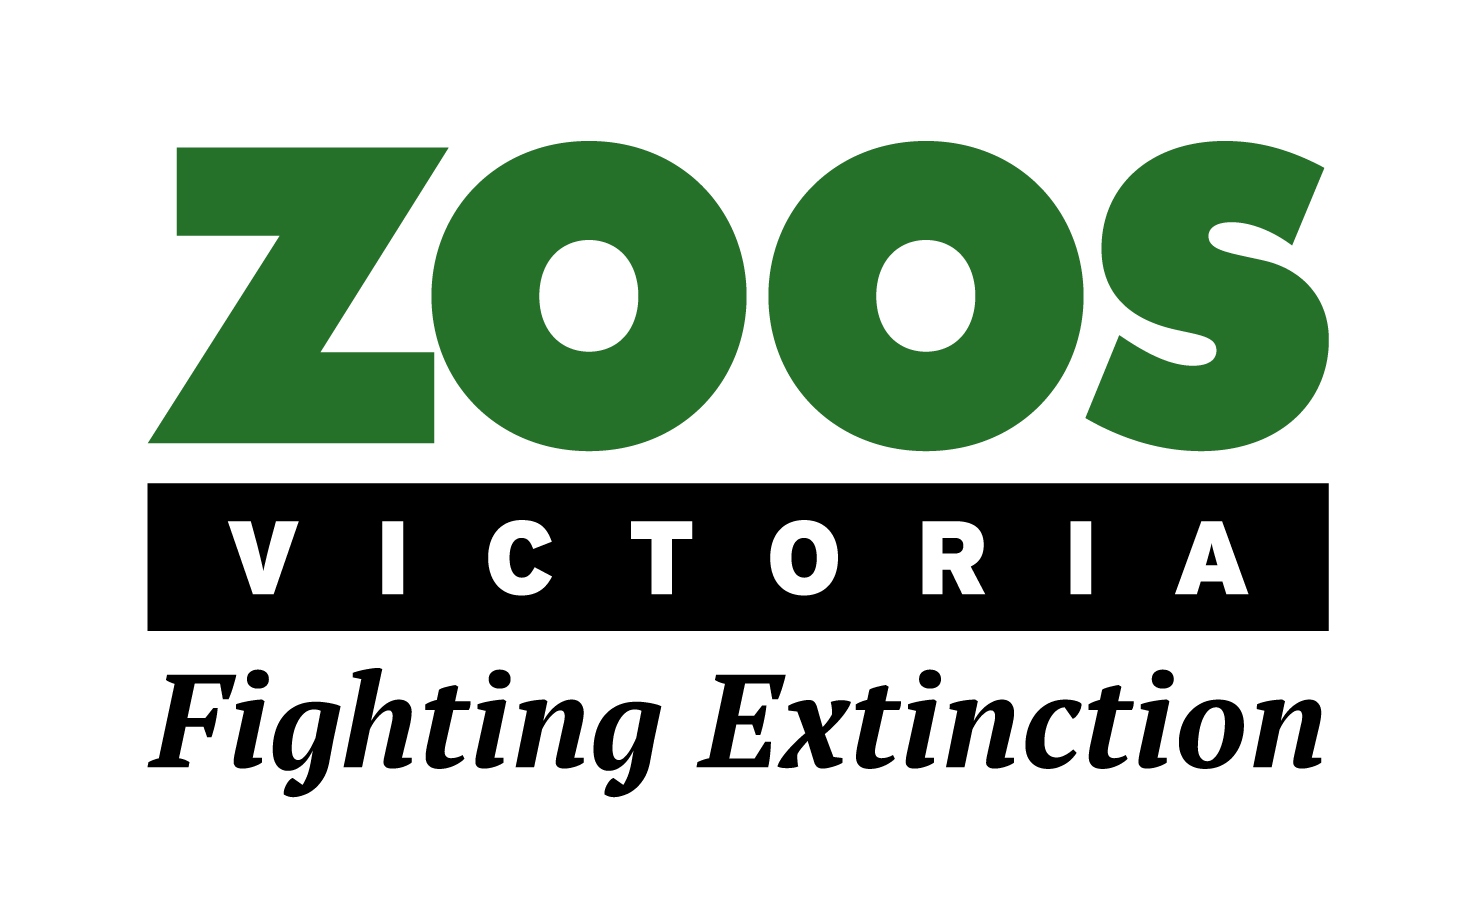 Zoos Victoria logo